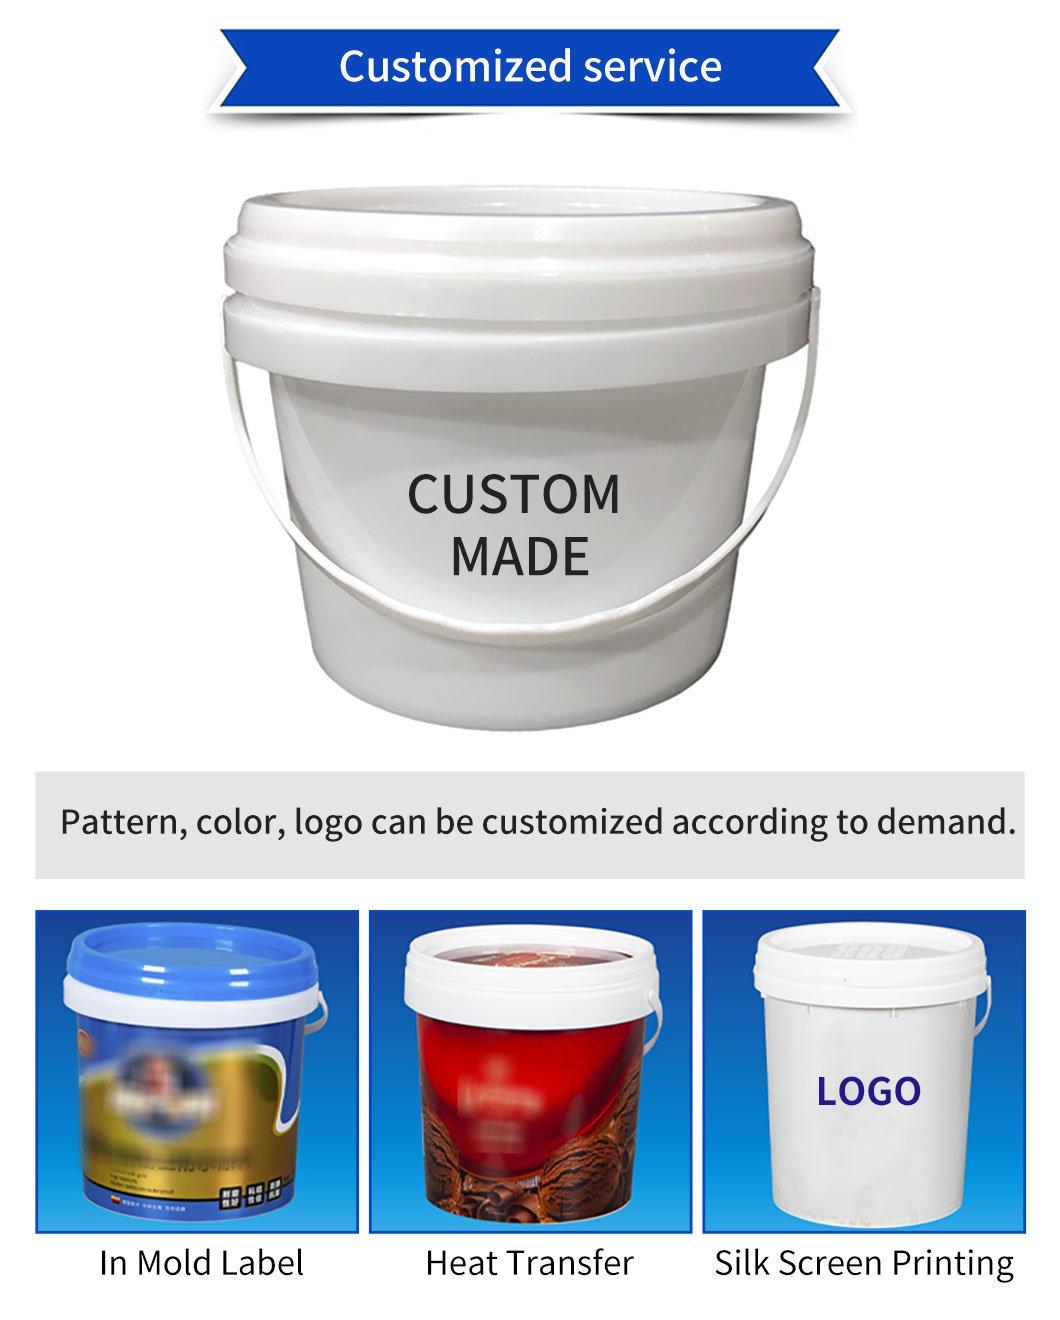 Plastic Paint Bucket Paint Barrel Paint Pail 25L for Oil/Chemical/Paint/Cosmetic Industry